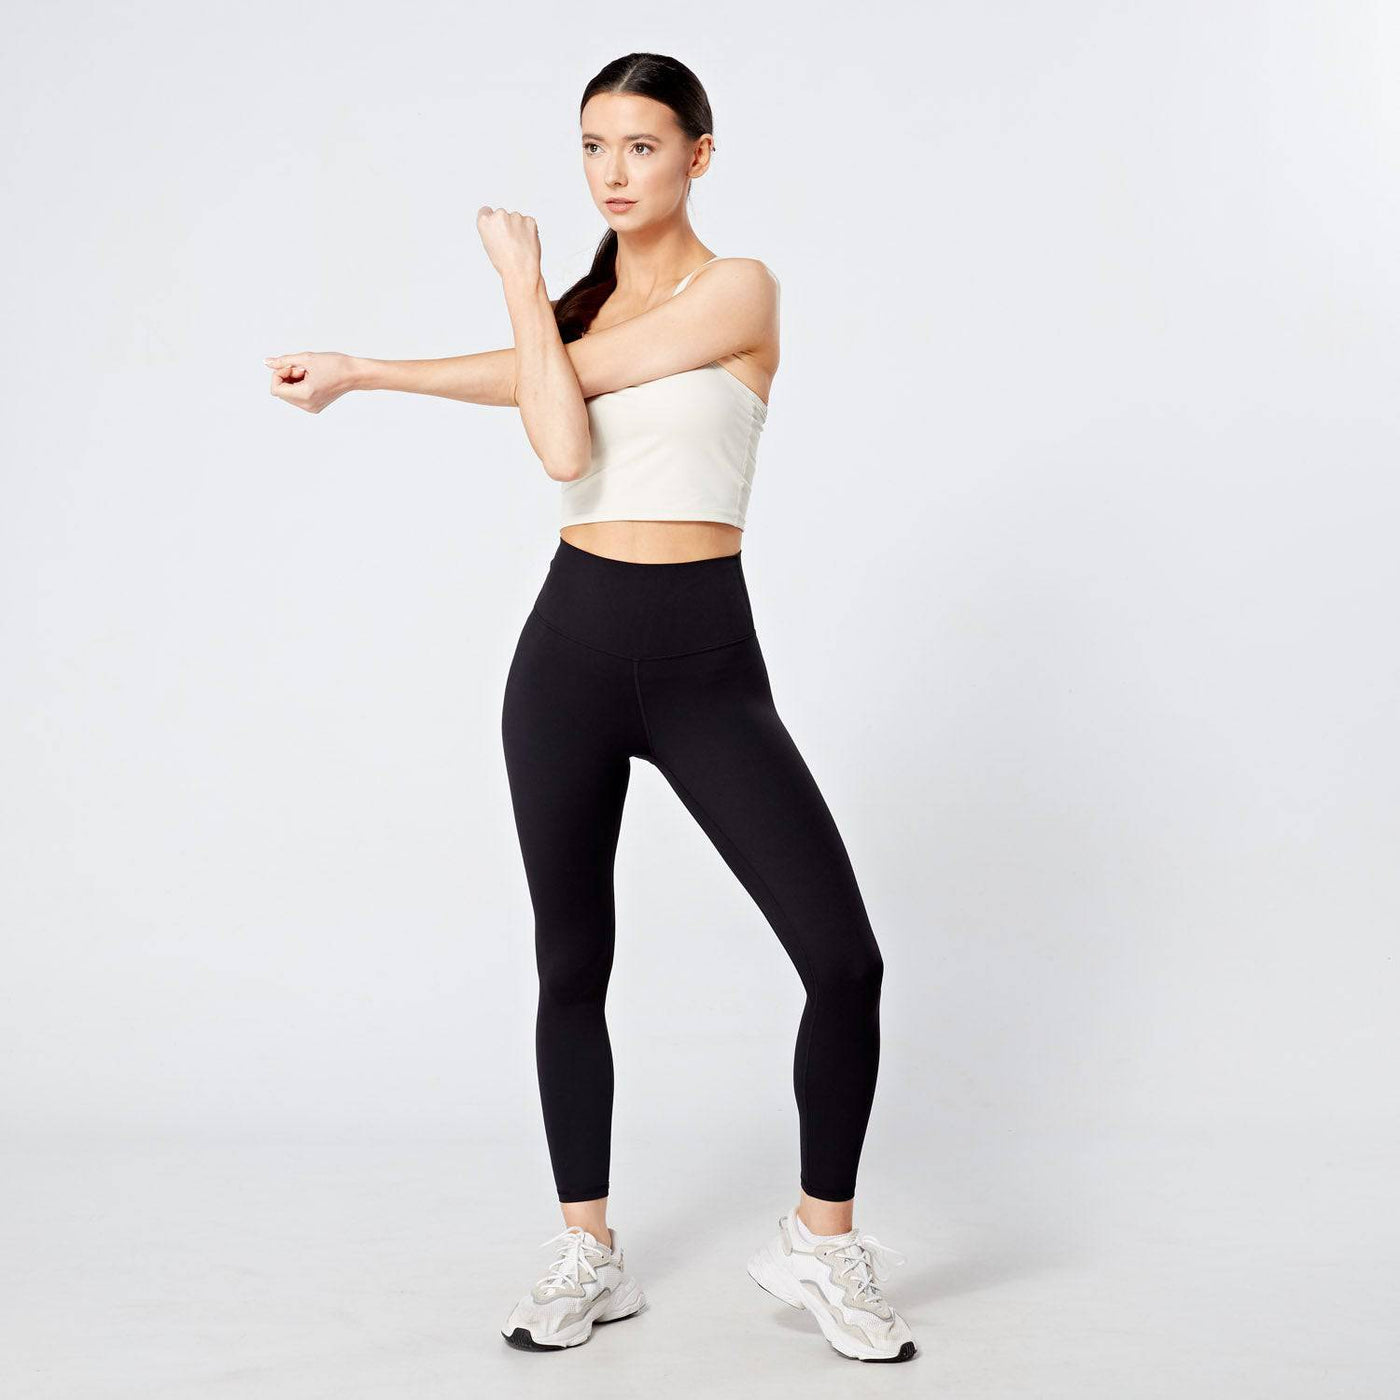 Women’s Fitness High-Waisted Leggings – FTI 100 Black